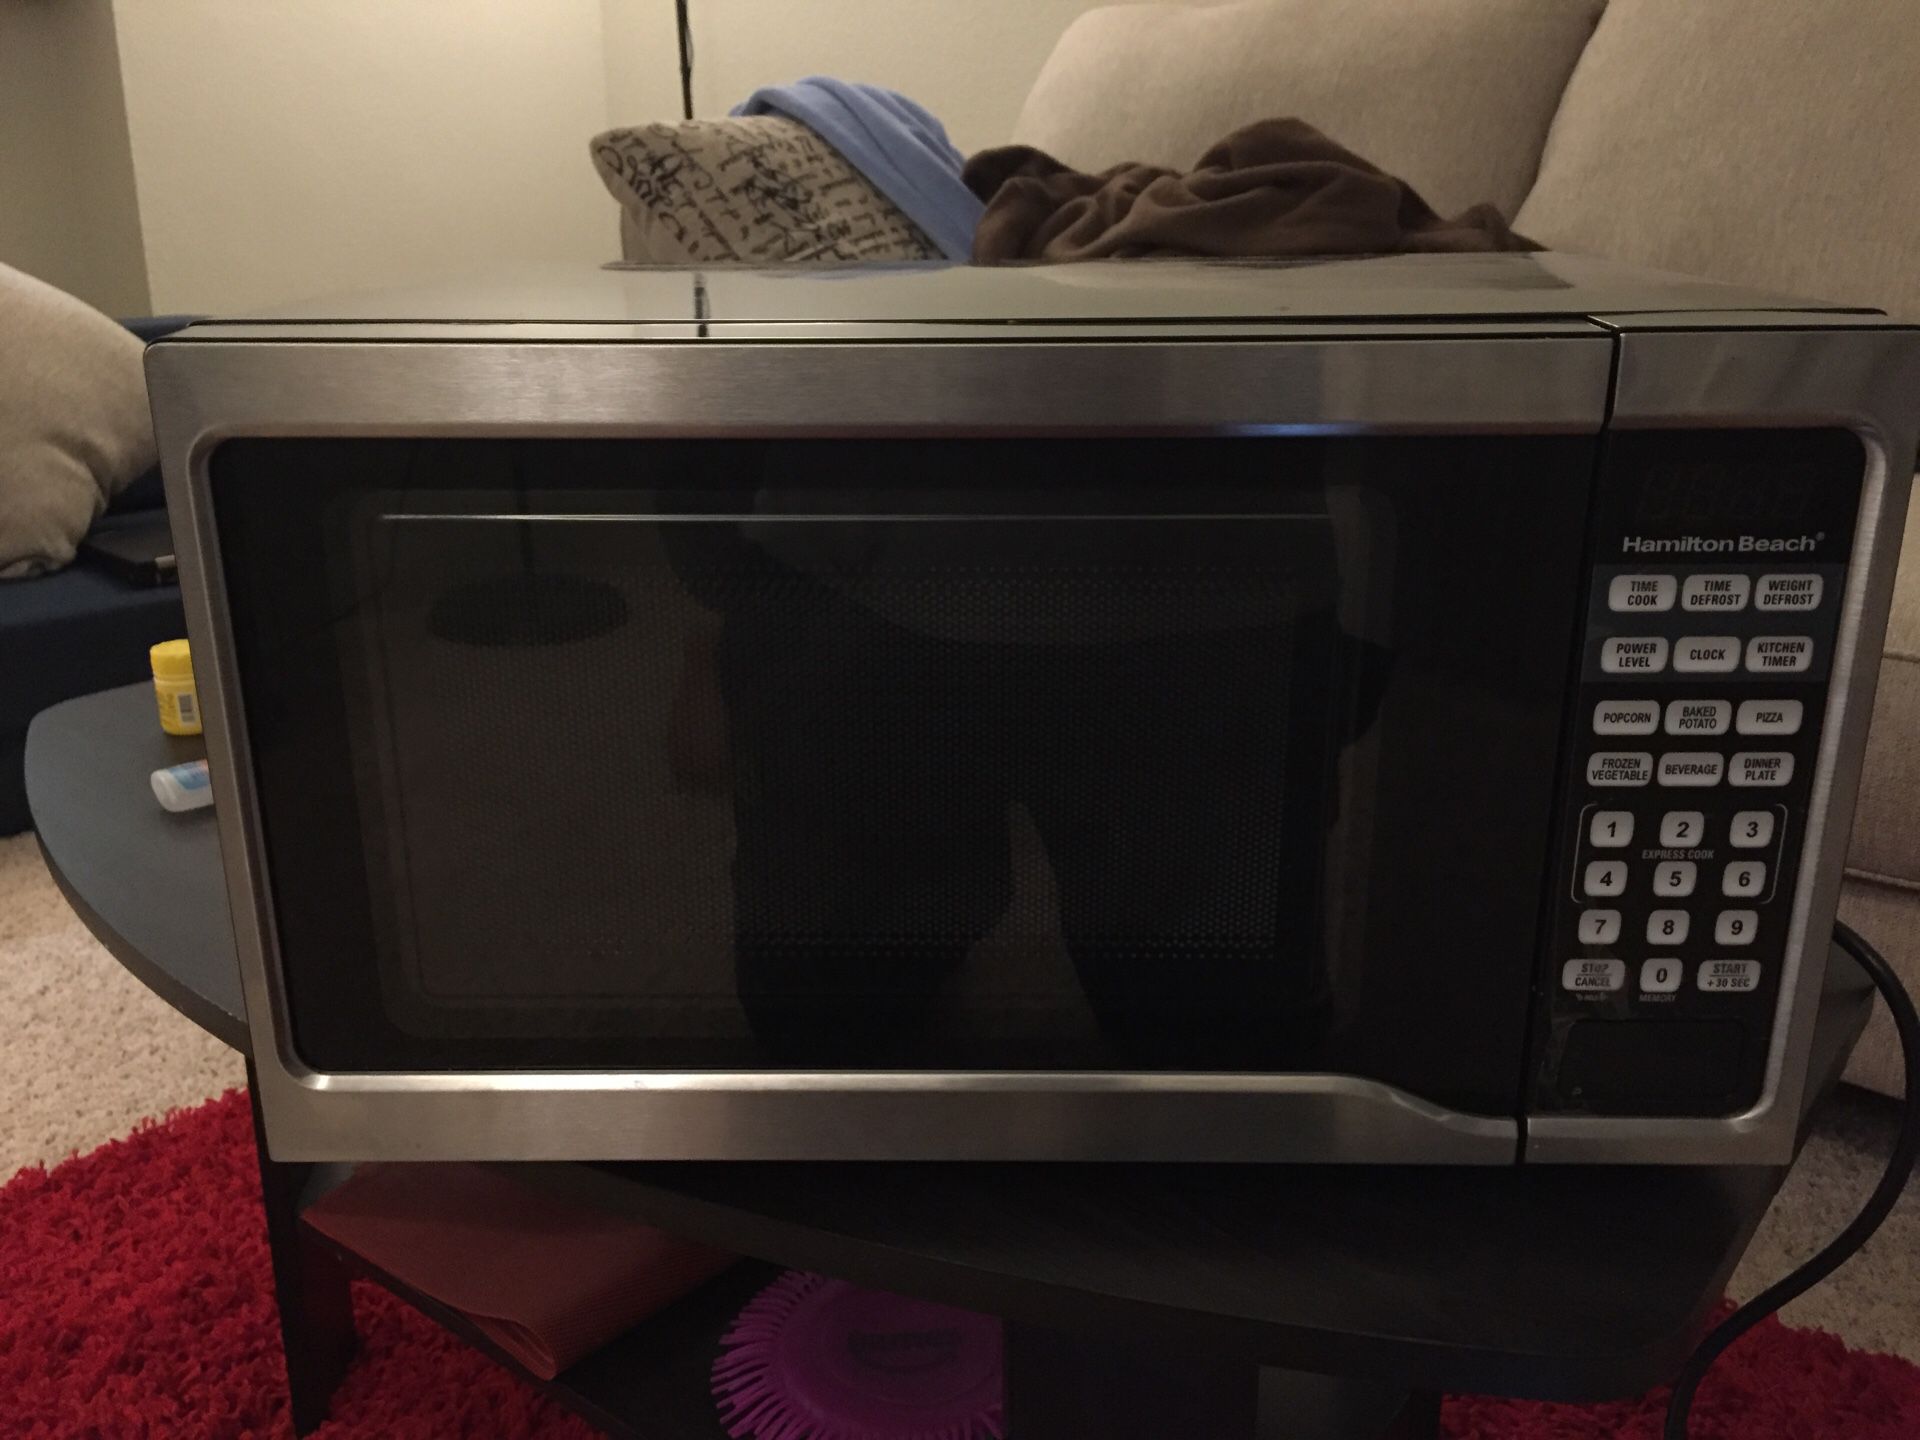 Microwave oven, Hamilton beach brand